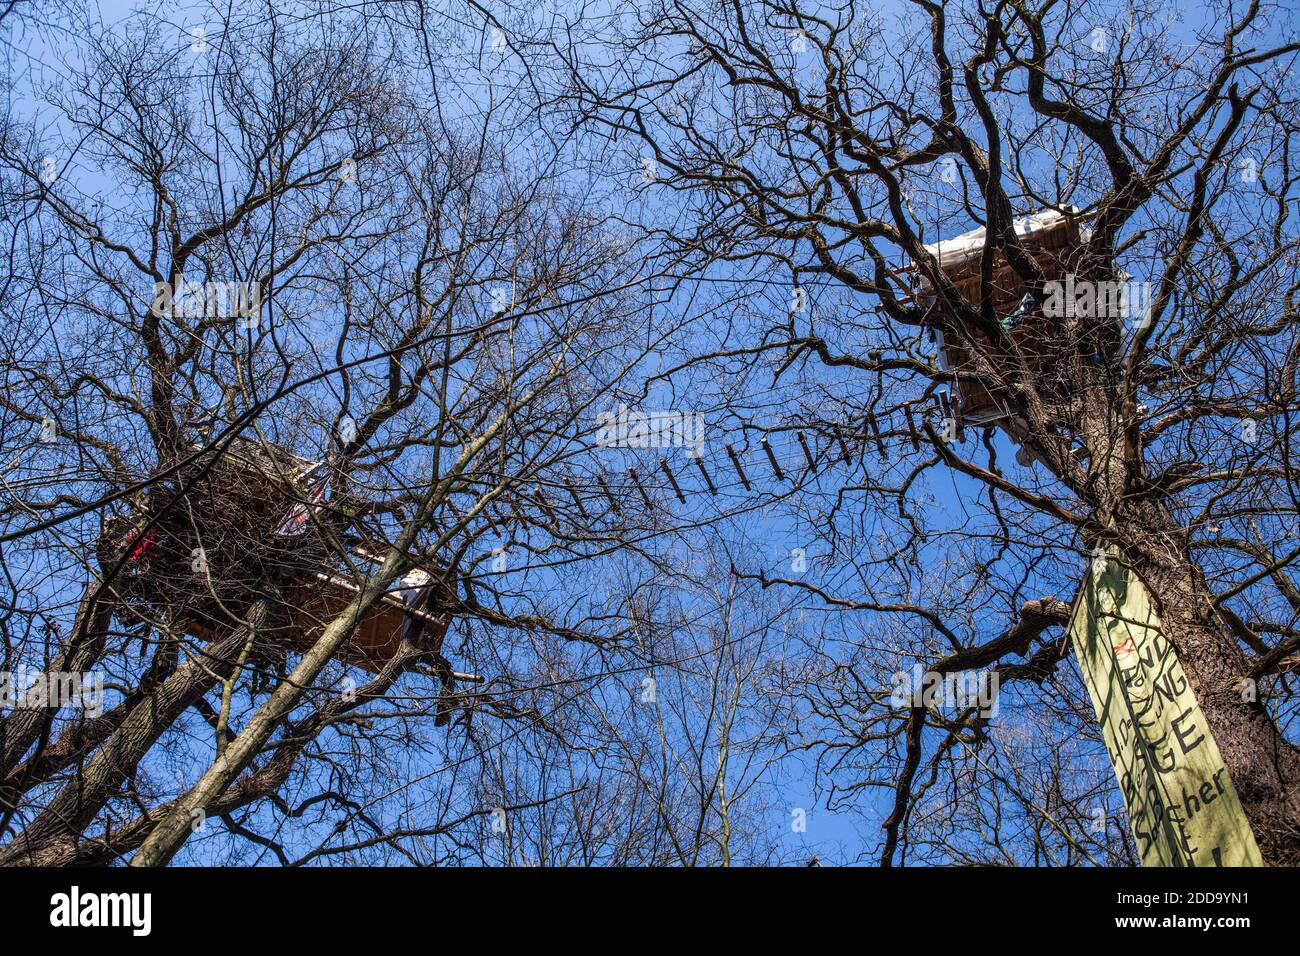 Trois maison à 25 mètres, construite par les activistes pour éviter la coupe du bois. La police essaie de nettoyer les maisons d'arbres dans la forêt de Hambach. Kerpen, Rhénanie-du-Nord-Westphalie, Allemagne, 14 mars 2018. Photo par Antonio Cascio/ABACAPRESS.COM Banque D'Images